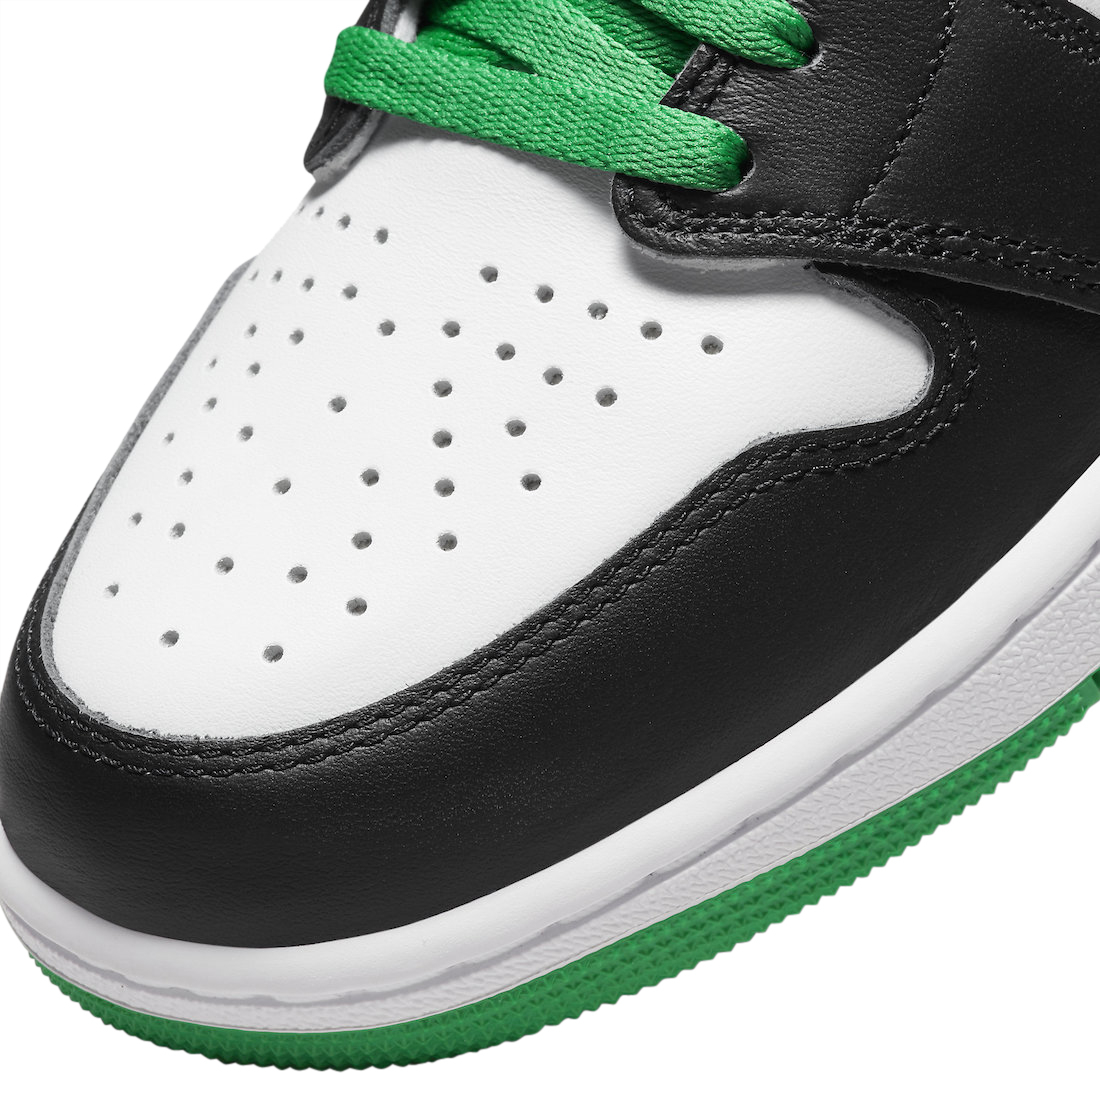 Air Jordan 1 High OG Lucky Green DZ5485-031